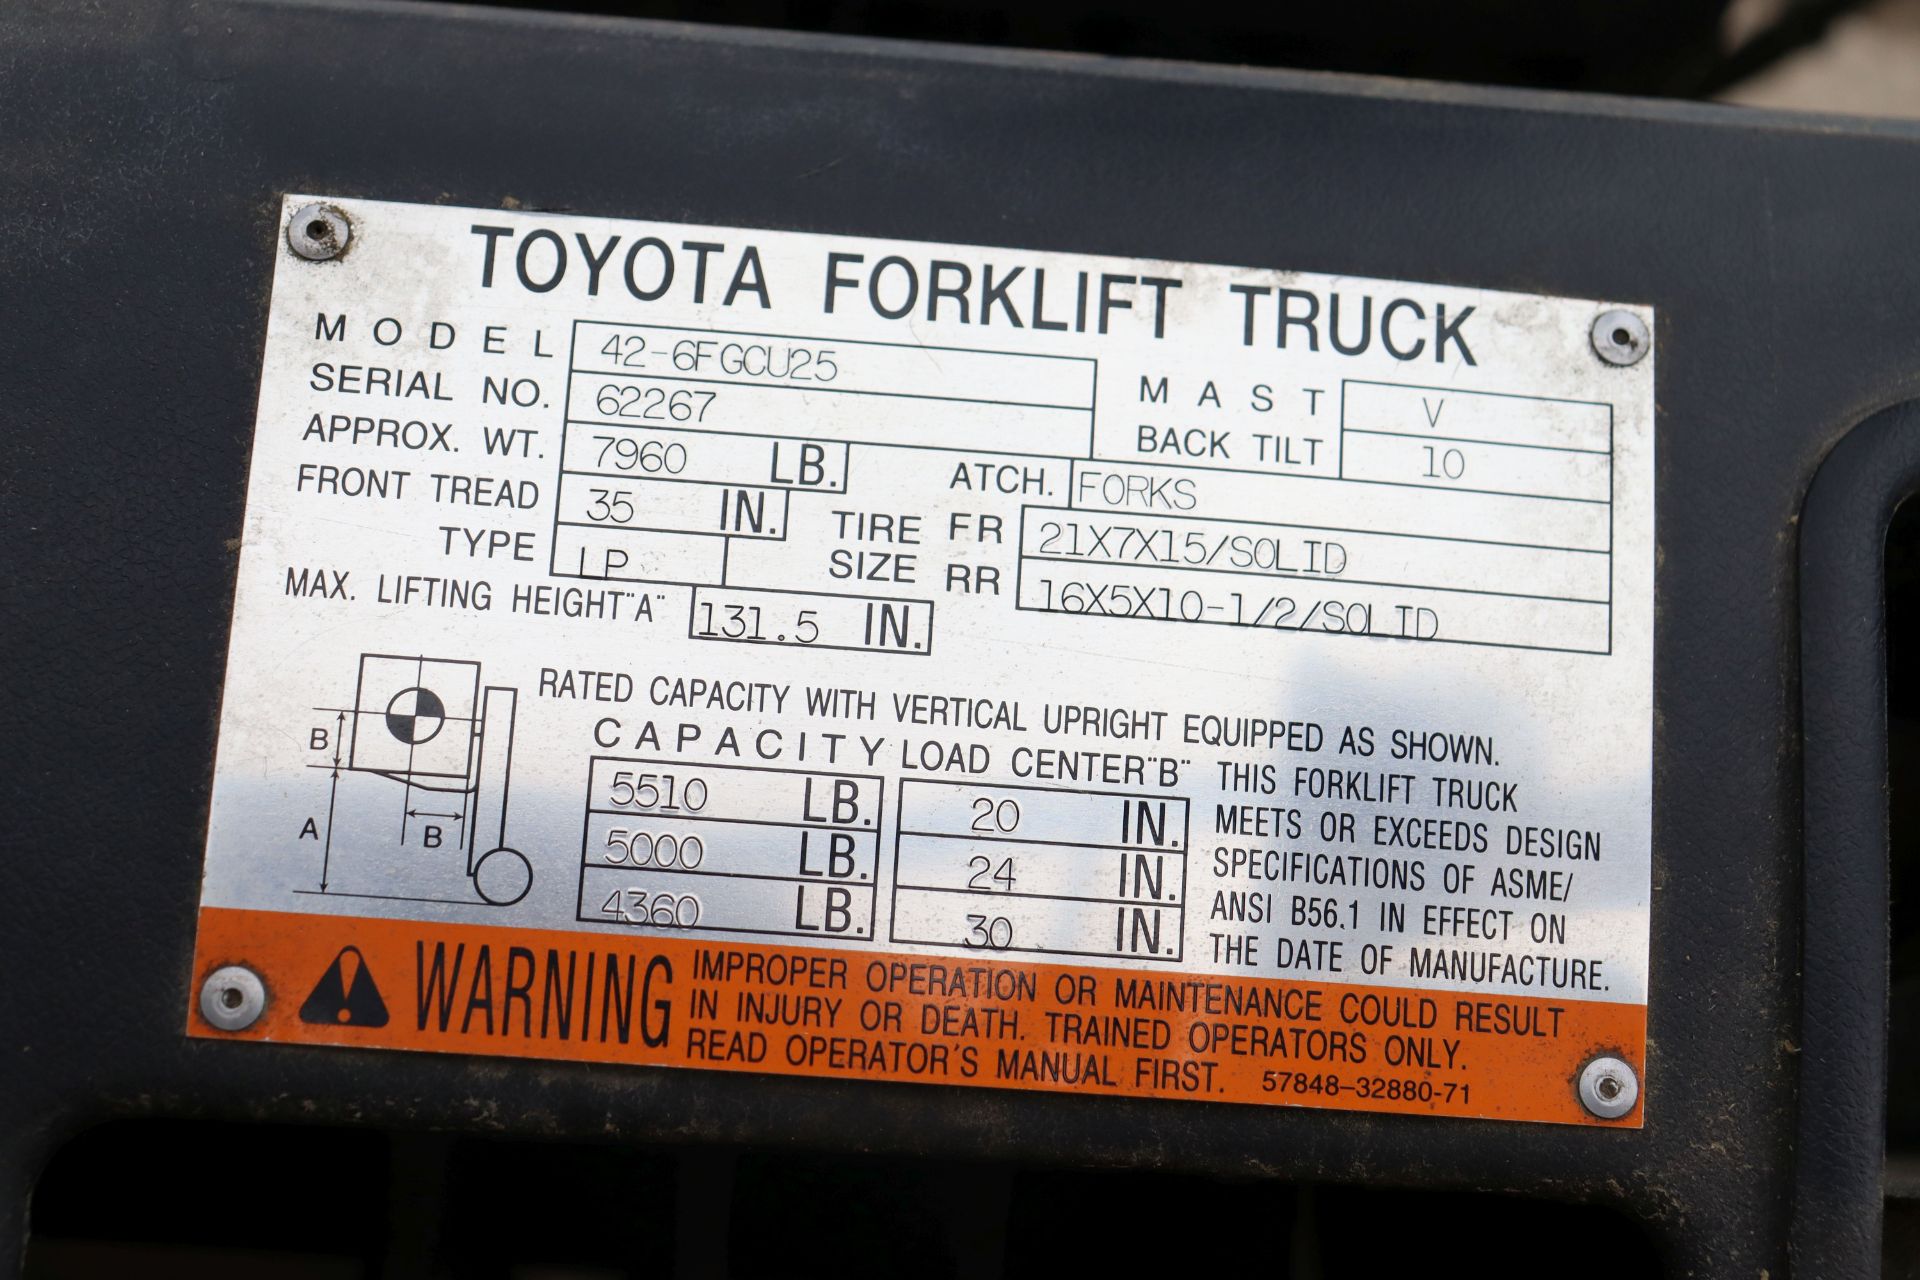 Toyota fork lift model - 42-6FGCU25 - Image 8 of 9